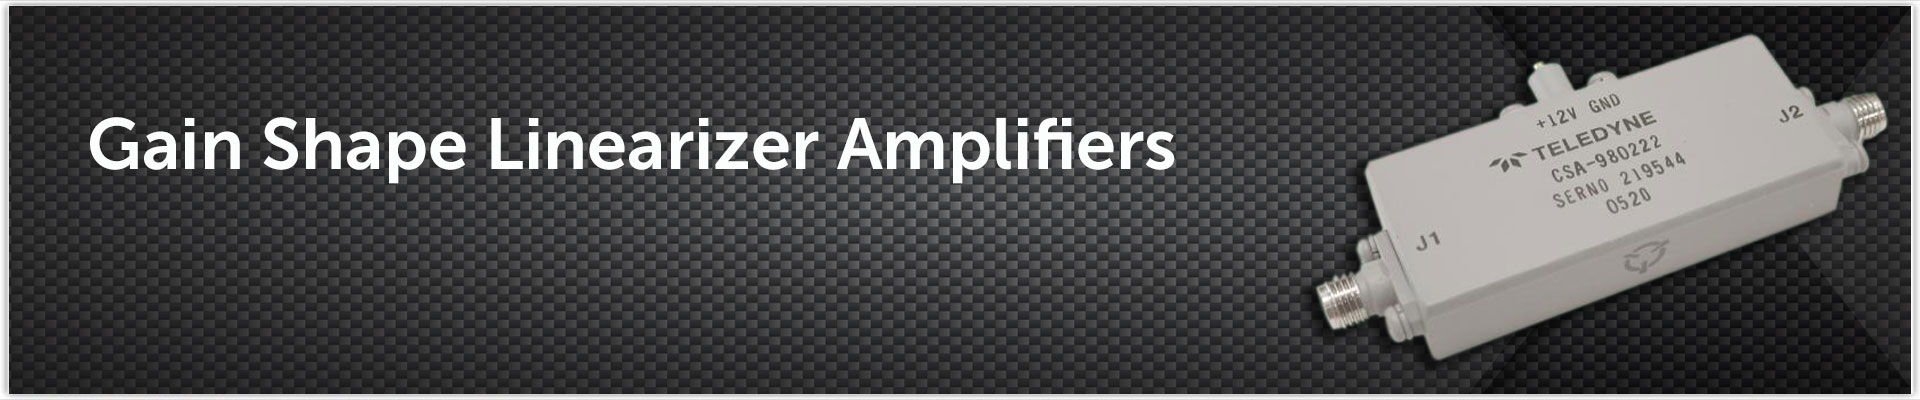 Gain-Shape-Linearizer-Amplifiers.jpg